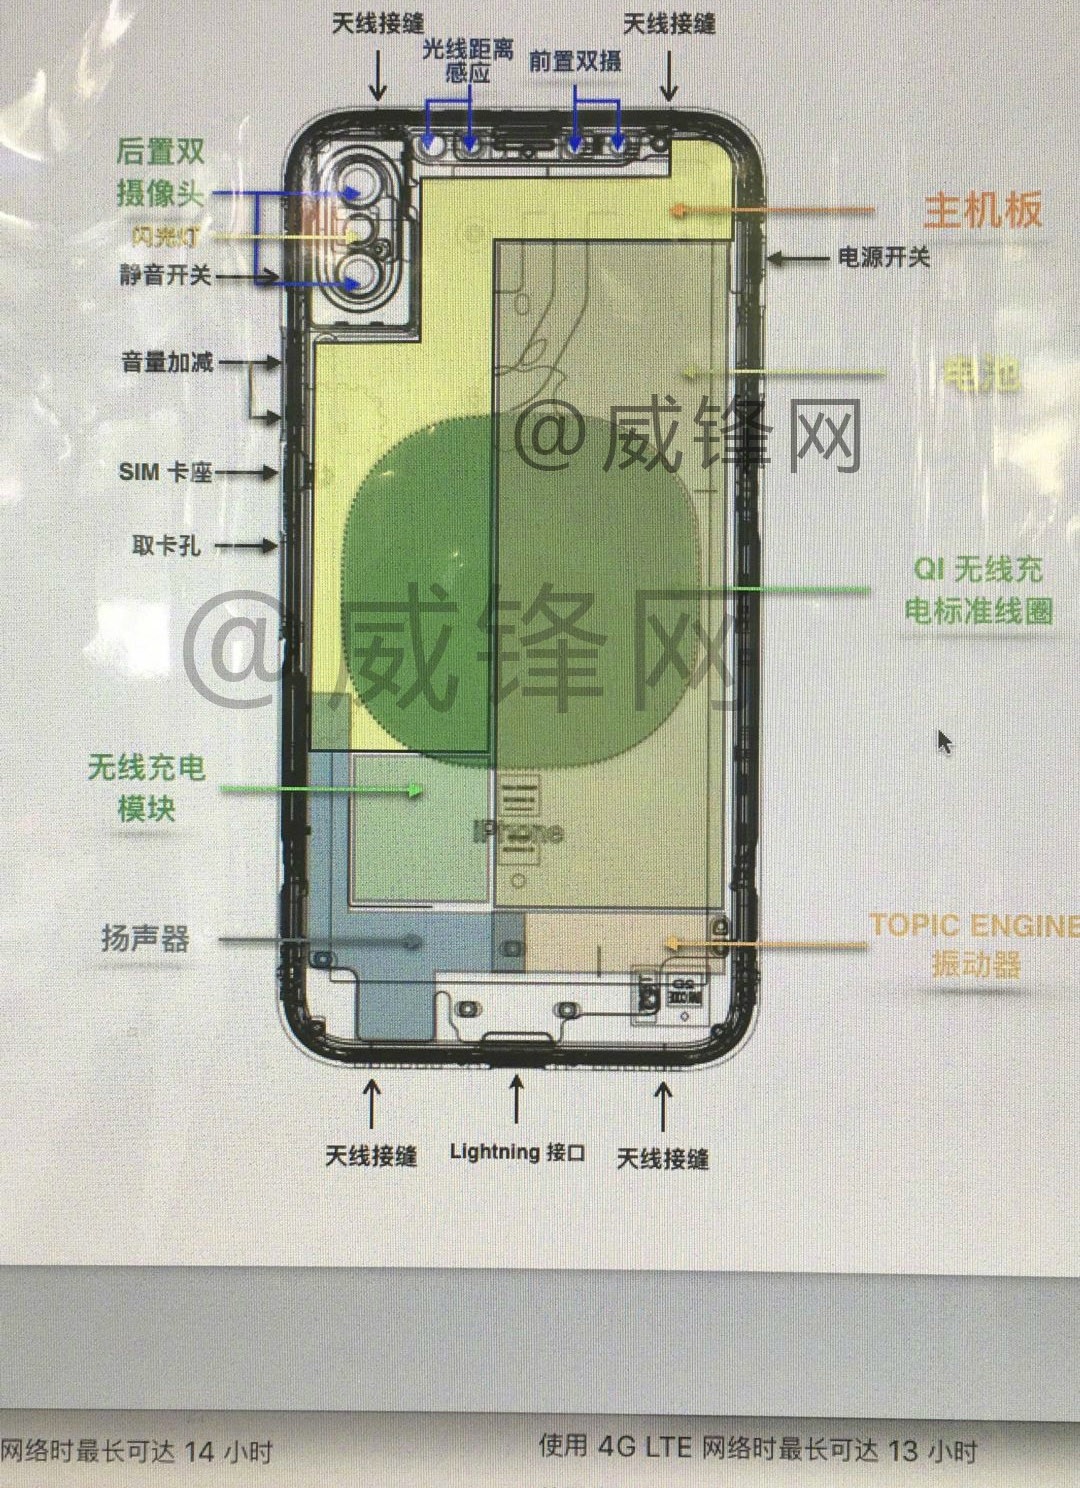 ｢iPhone 8｣のものとされる図面をもとに各種部品などの位置を解説した新たな画像